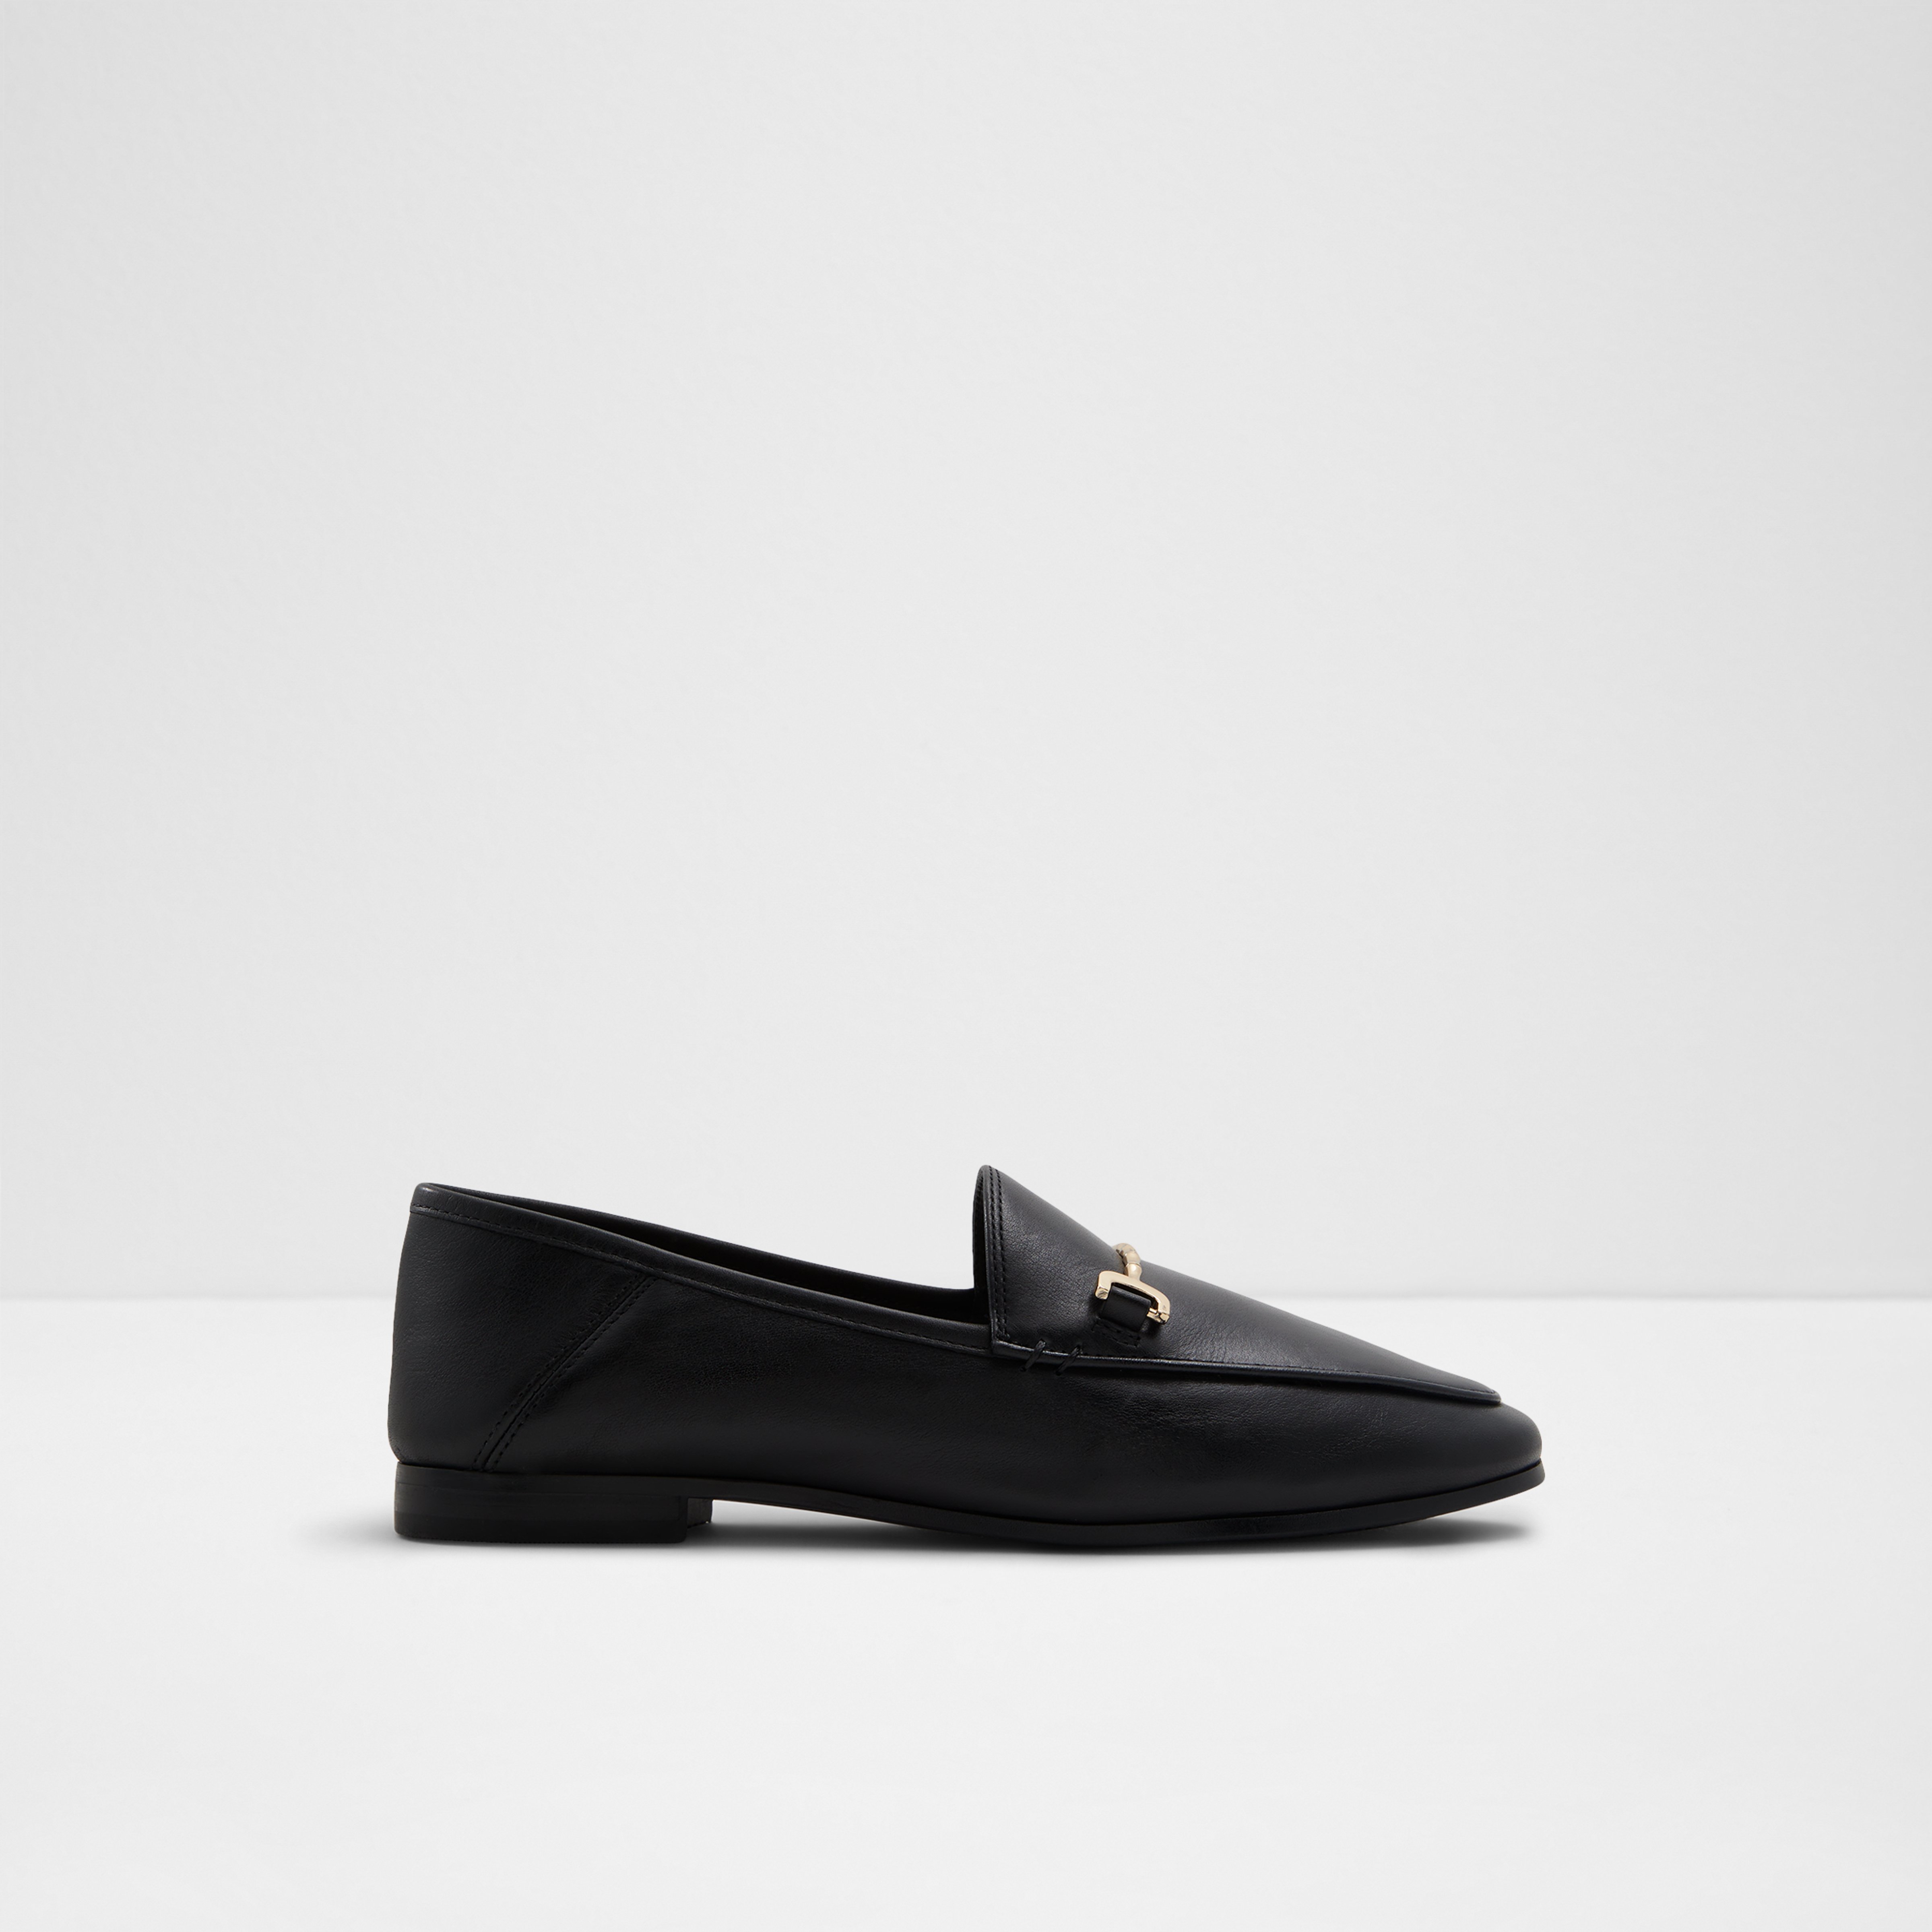 Aldo Kesley Shoes - Women's